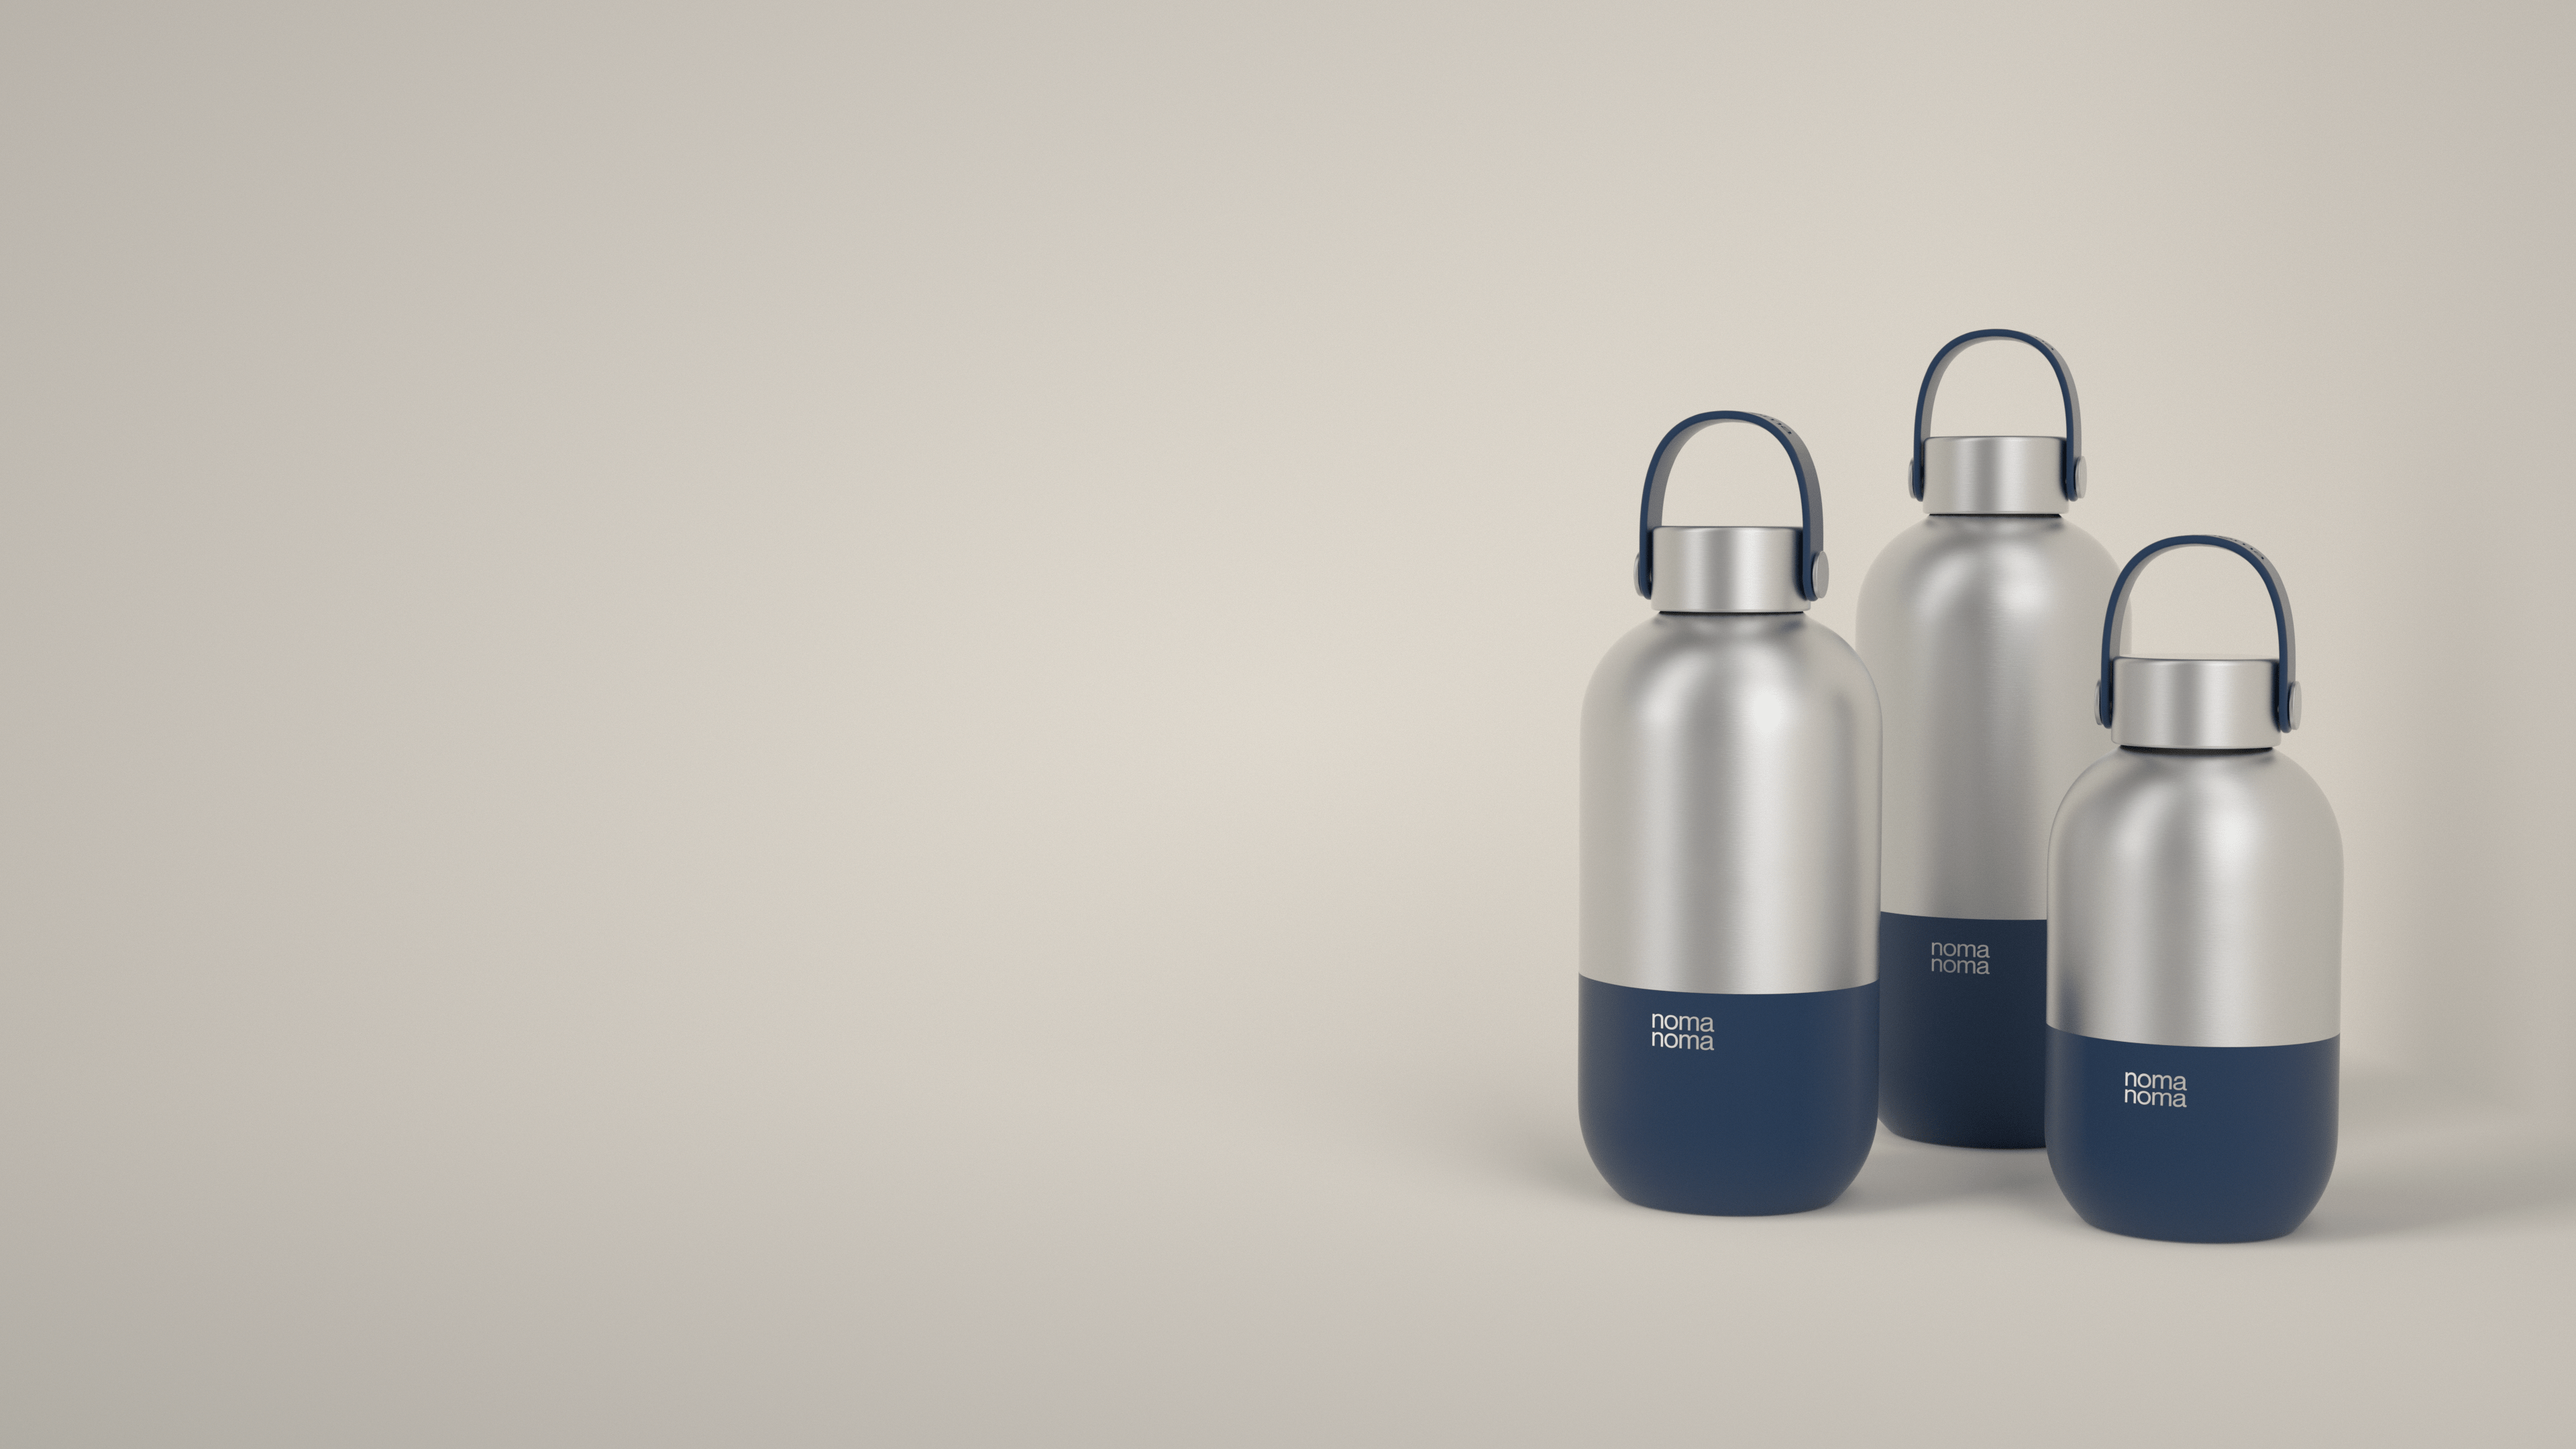 Die dunkelblaue Trinkflasche von noma noma gibt es in drei praktischen Größen.